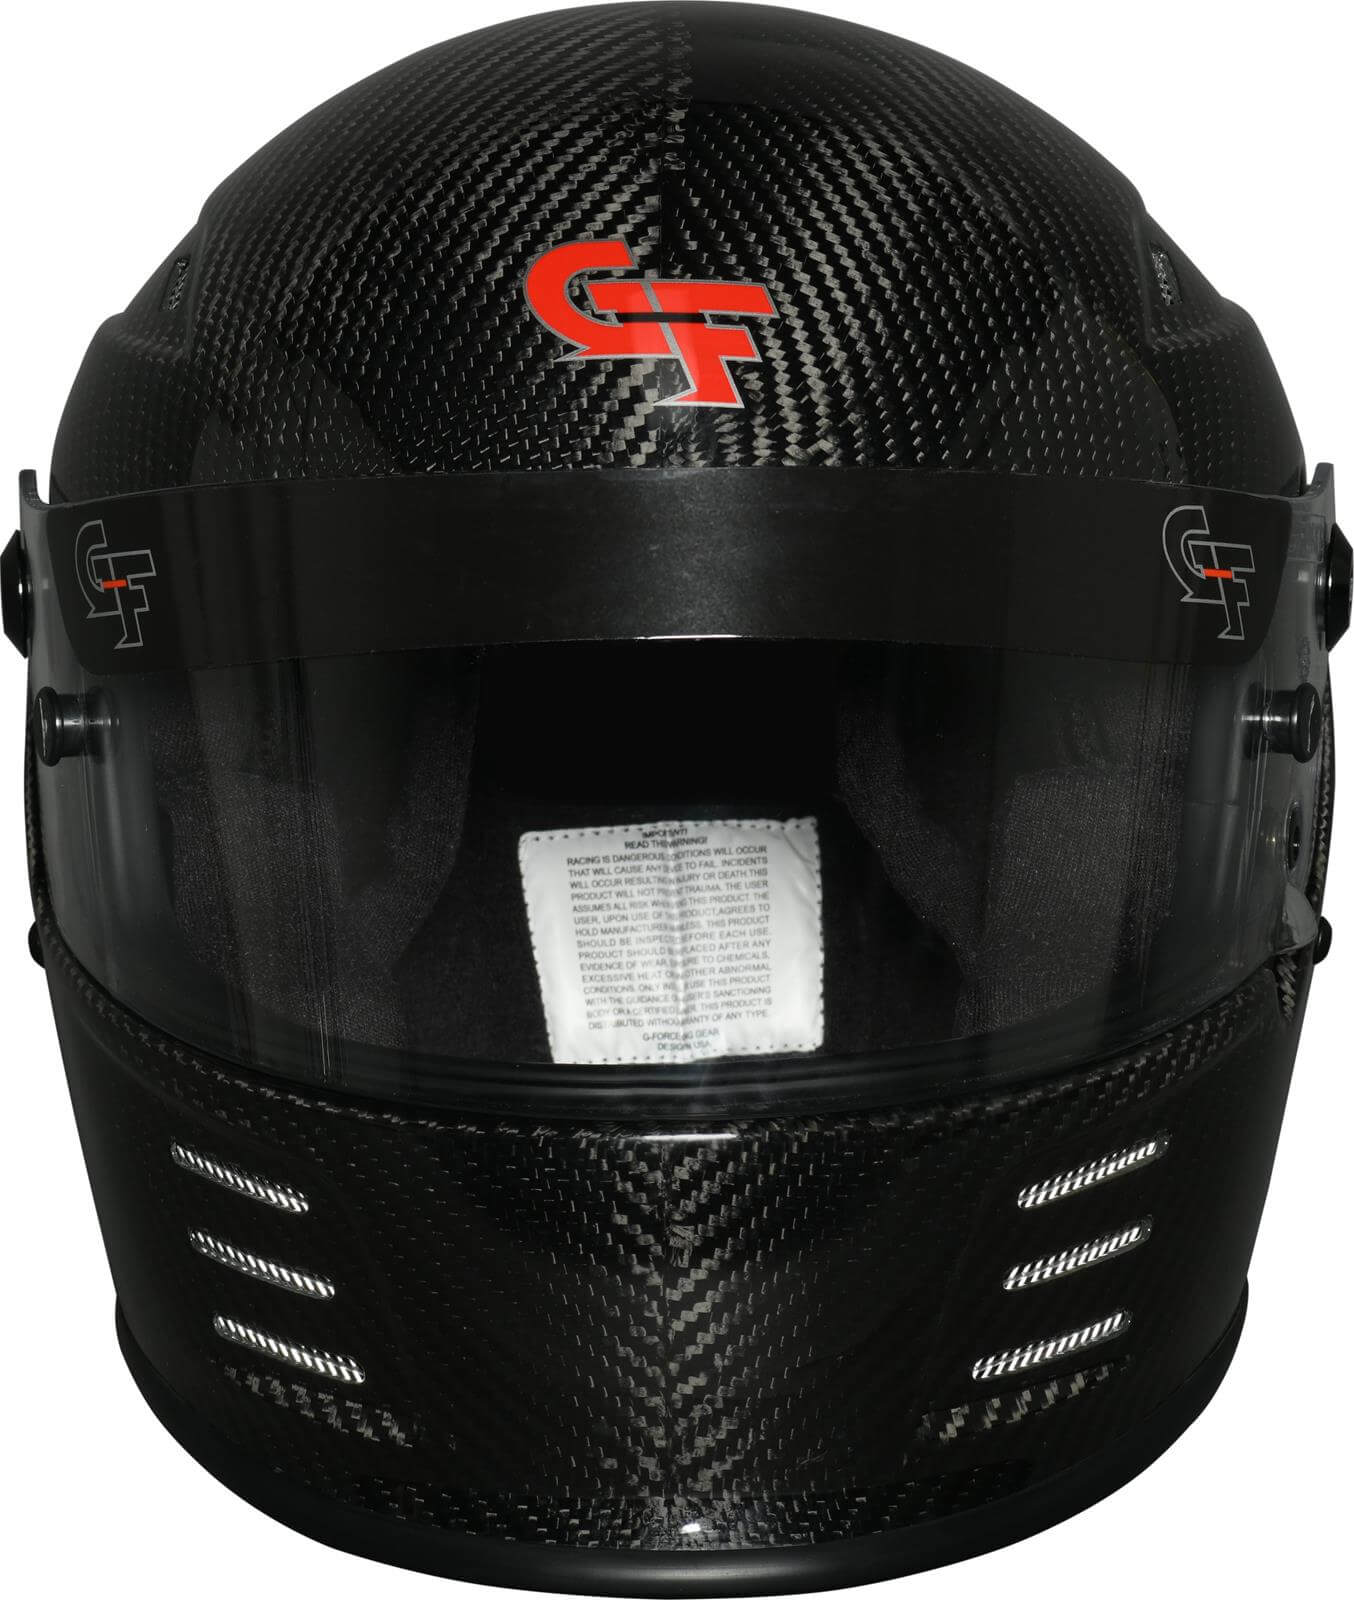 REVO CARBON SA2020 Helmet - $619.00